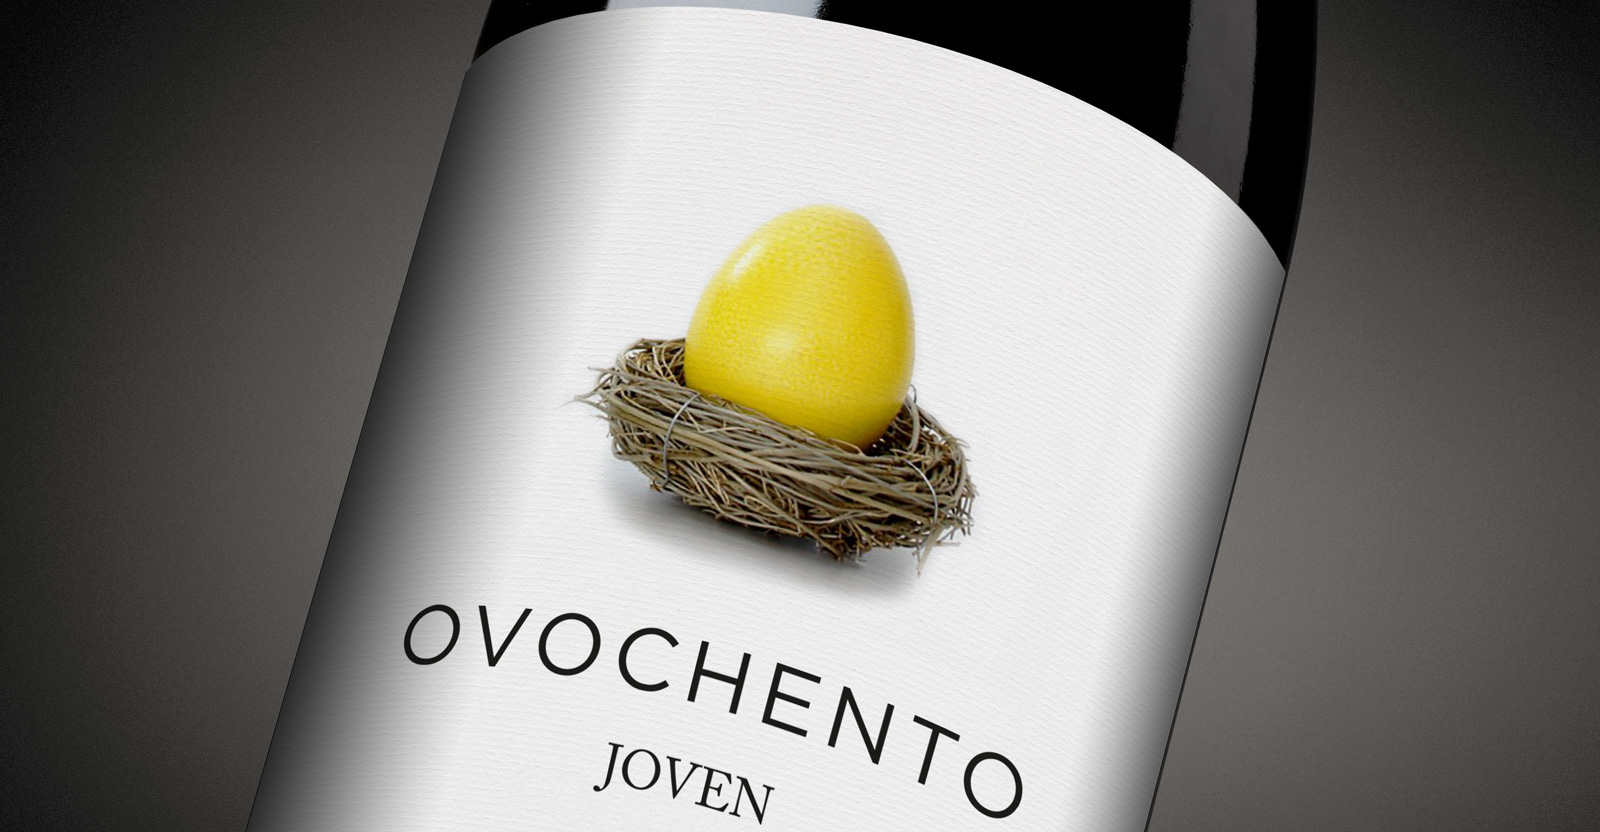 Diseño gráfico y creativo de etiquetas y packaging de vino para OVOCHENTO